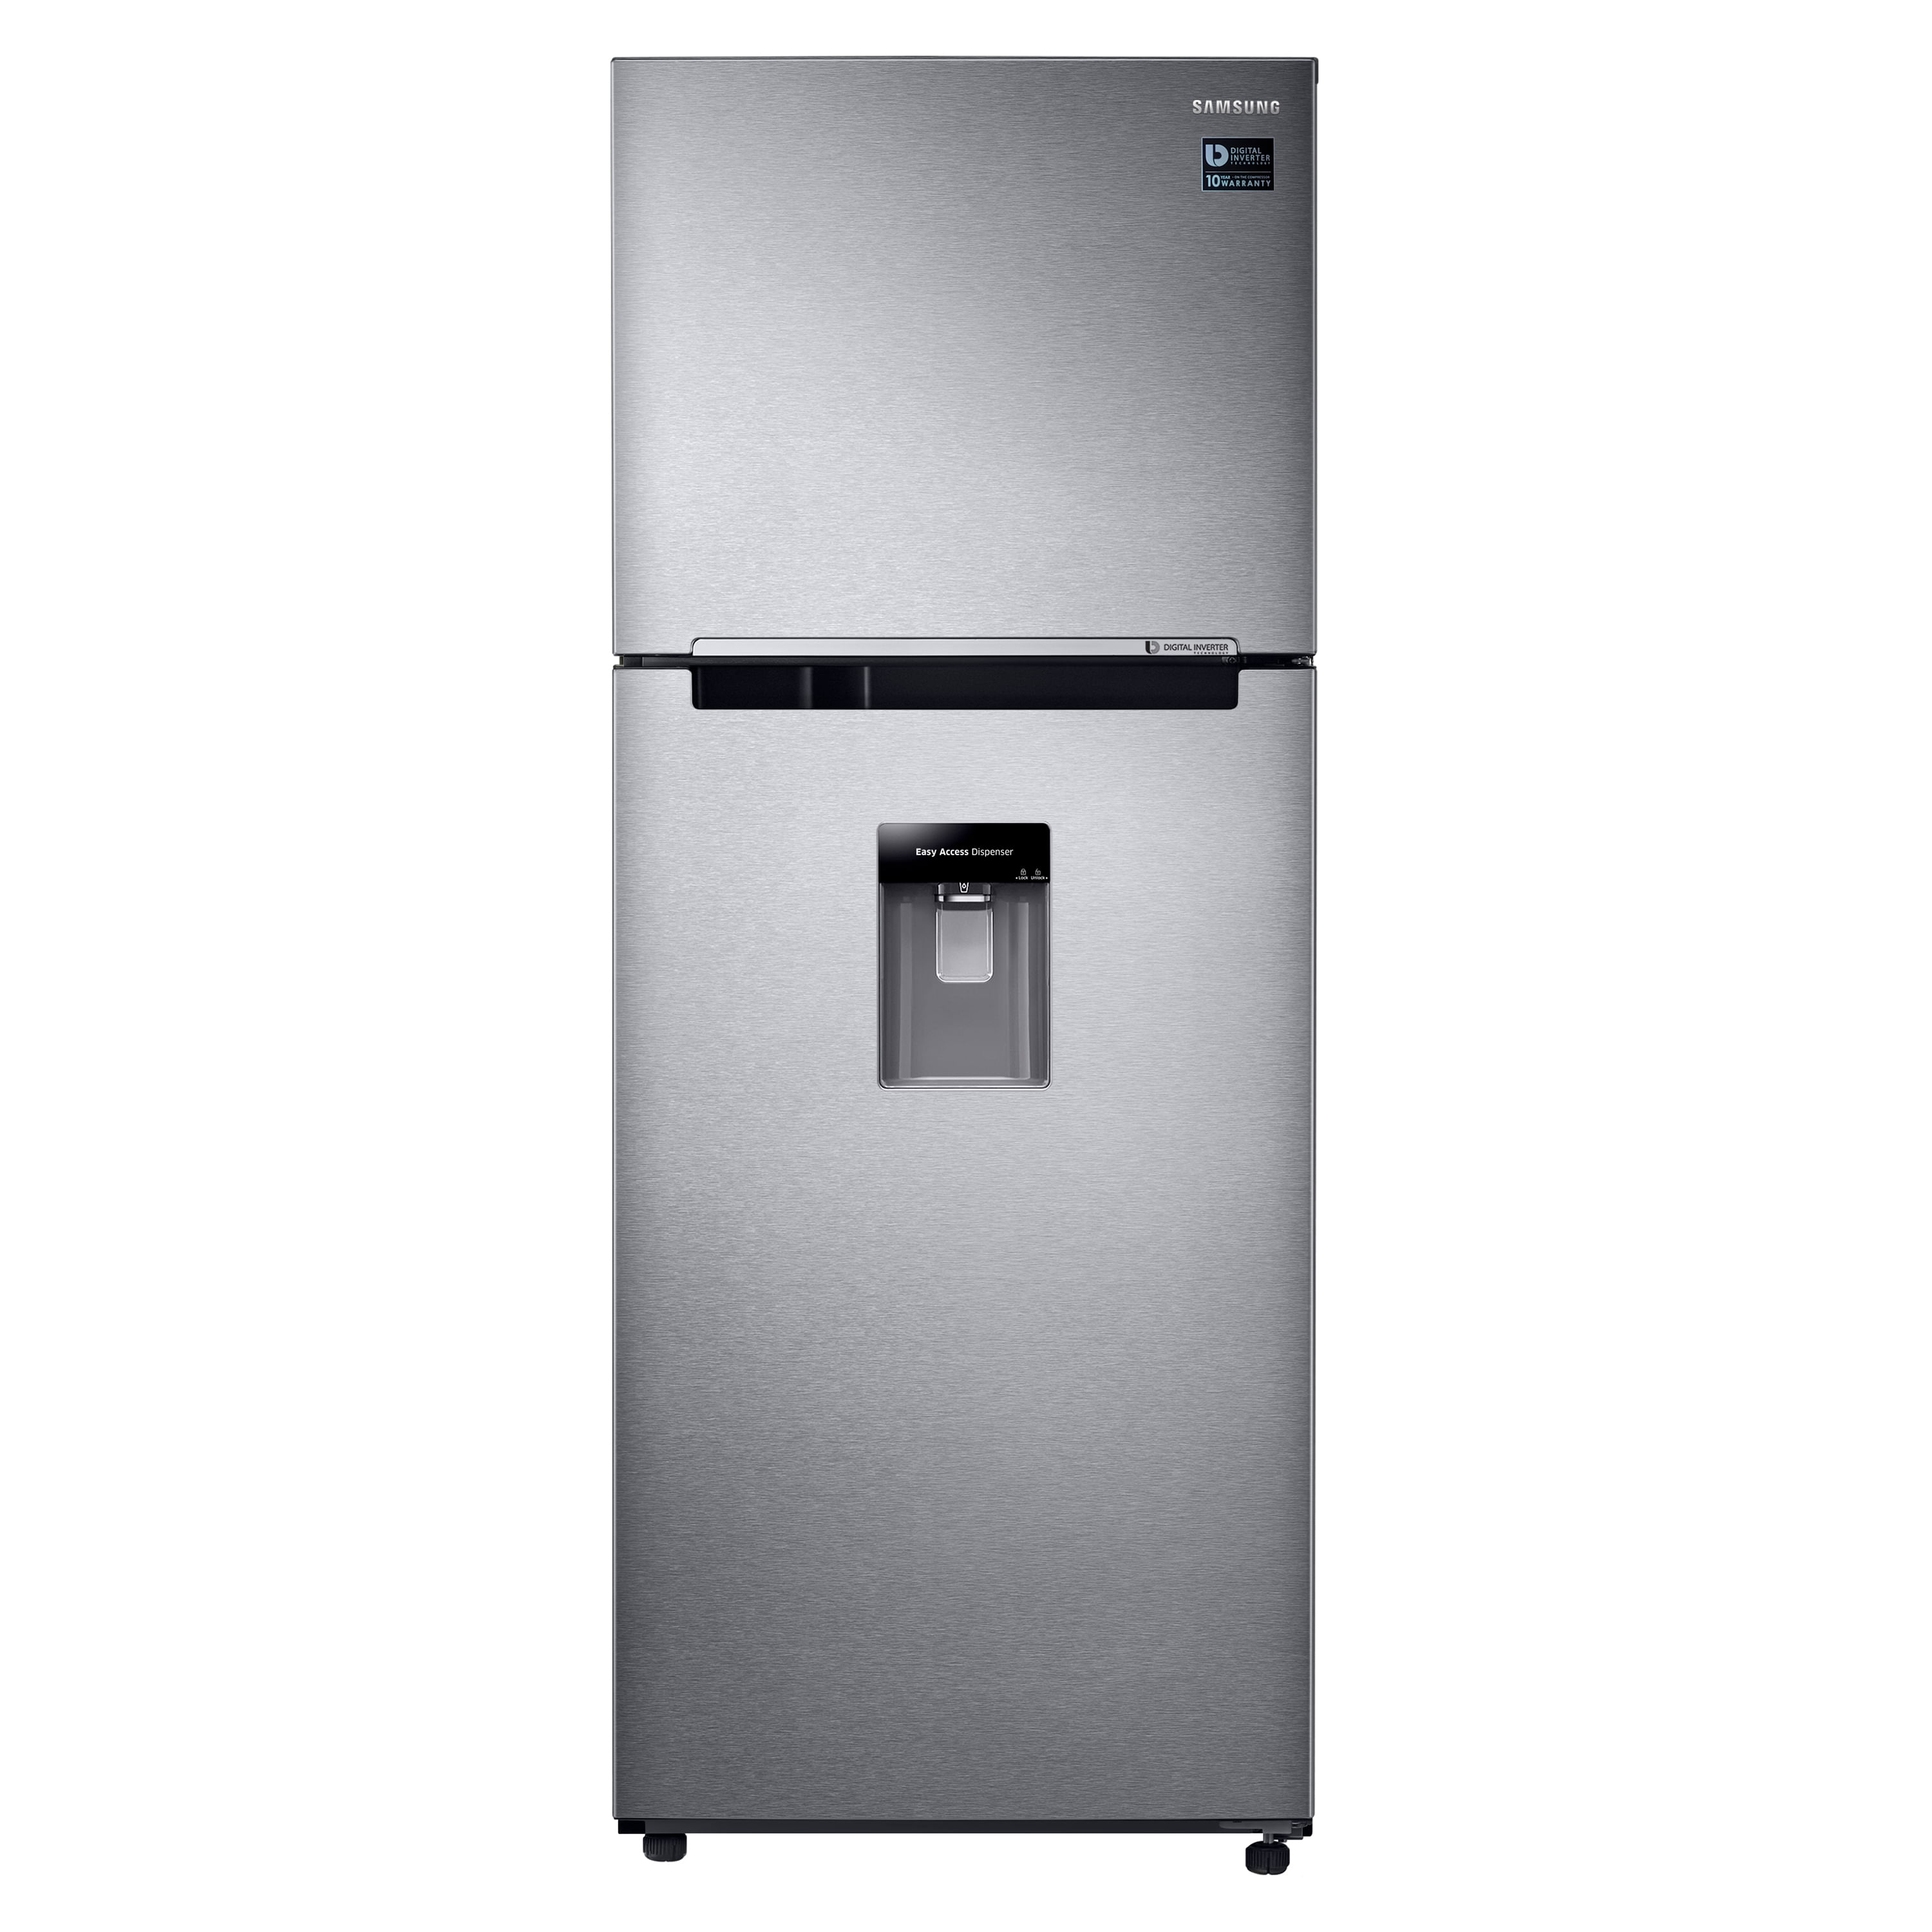 Refrigeradora-Samsung-Silver-13-Pc-1-45019